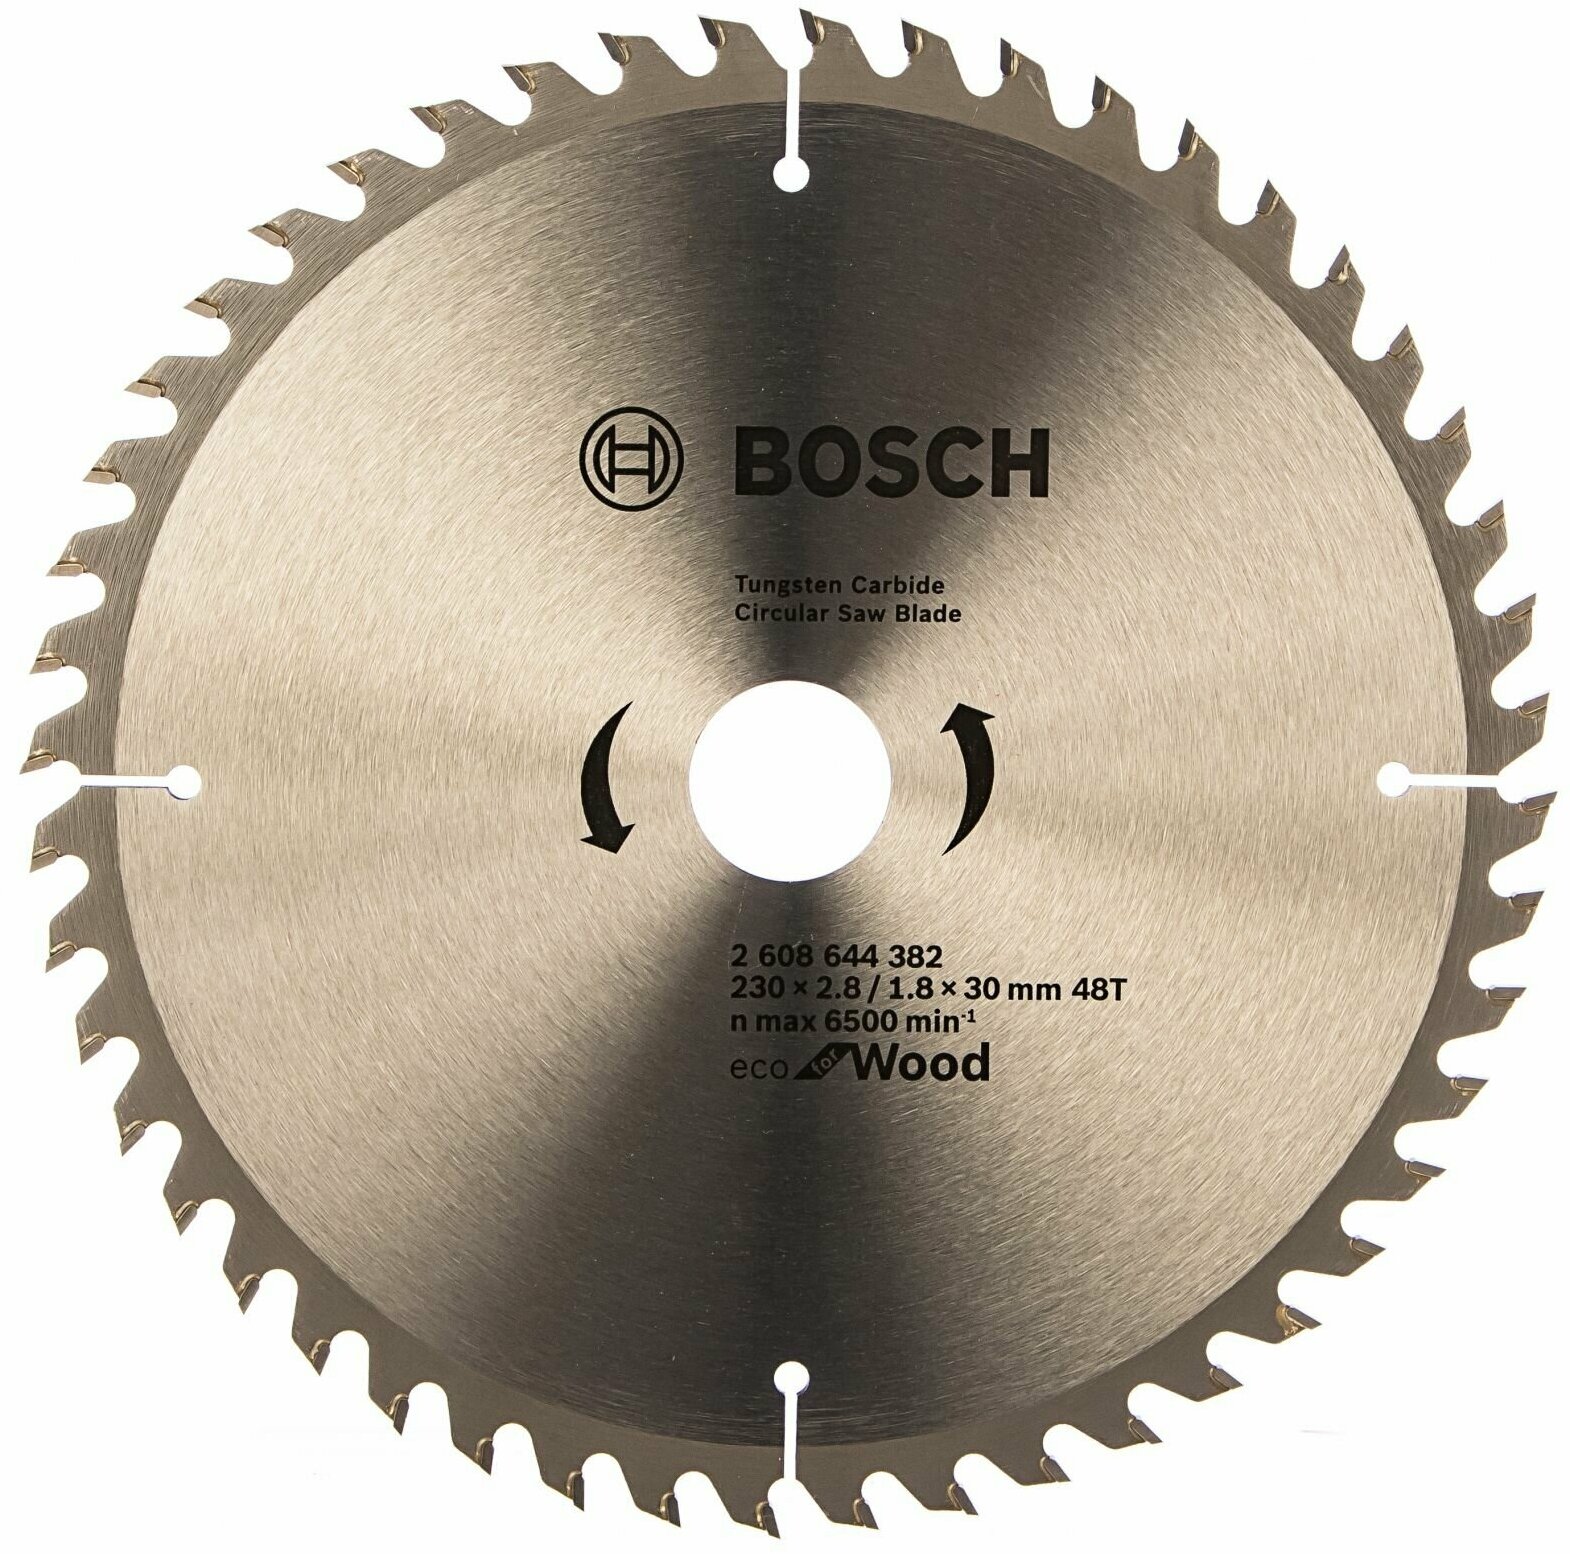 Пильный диск ECO WOOD (230x30 мм; 48T) Bosch